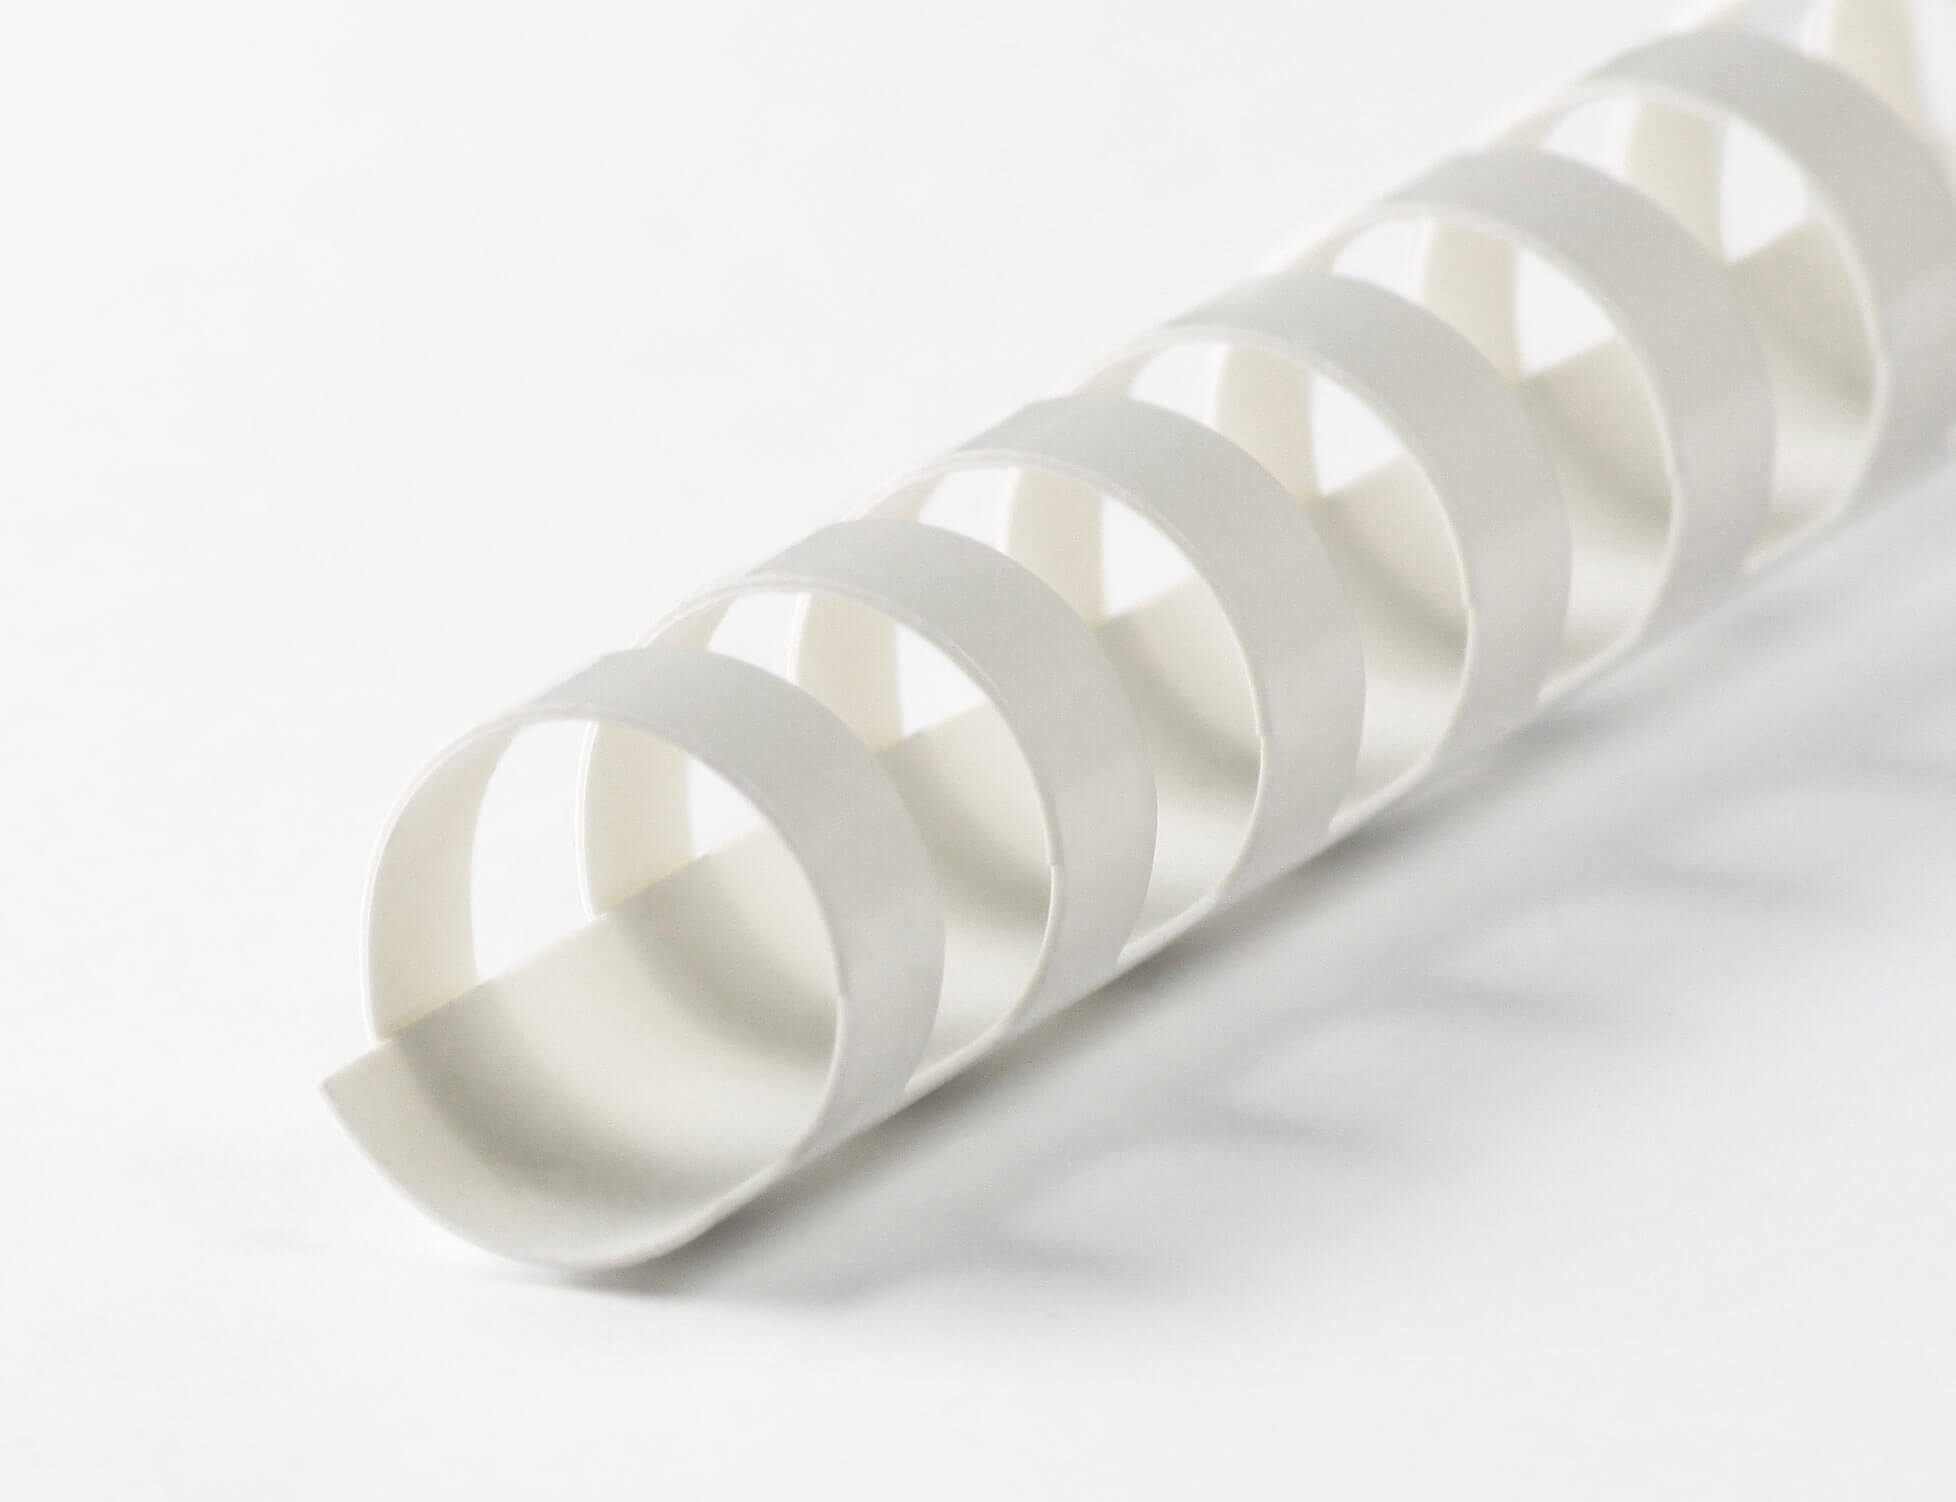 Plastikbinderücken mit 24 Ringen für DIN A5, Ø 28mm, weiß | Bestnr. 24BRP280-WS